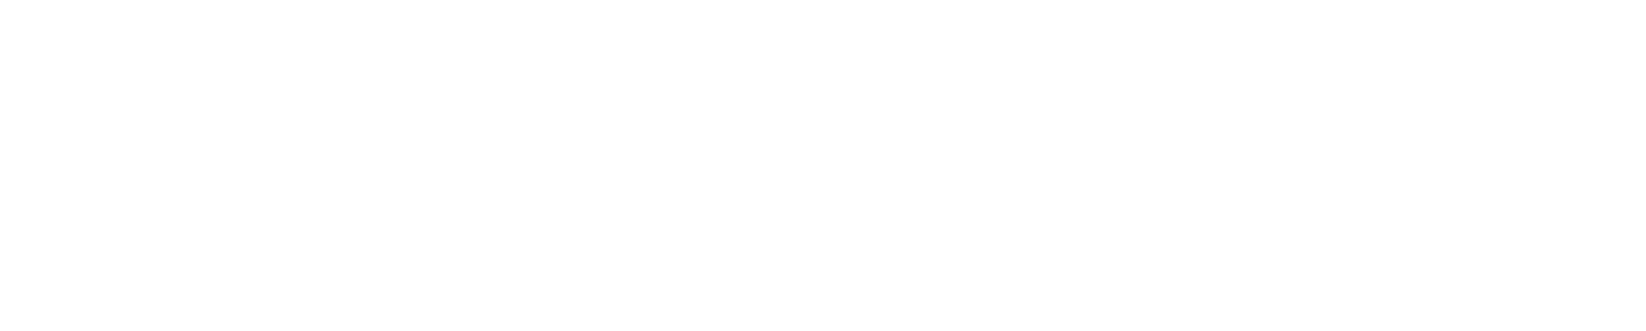 Melissa Carris Ph.D. logo in white